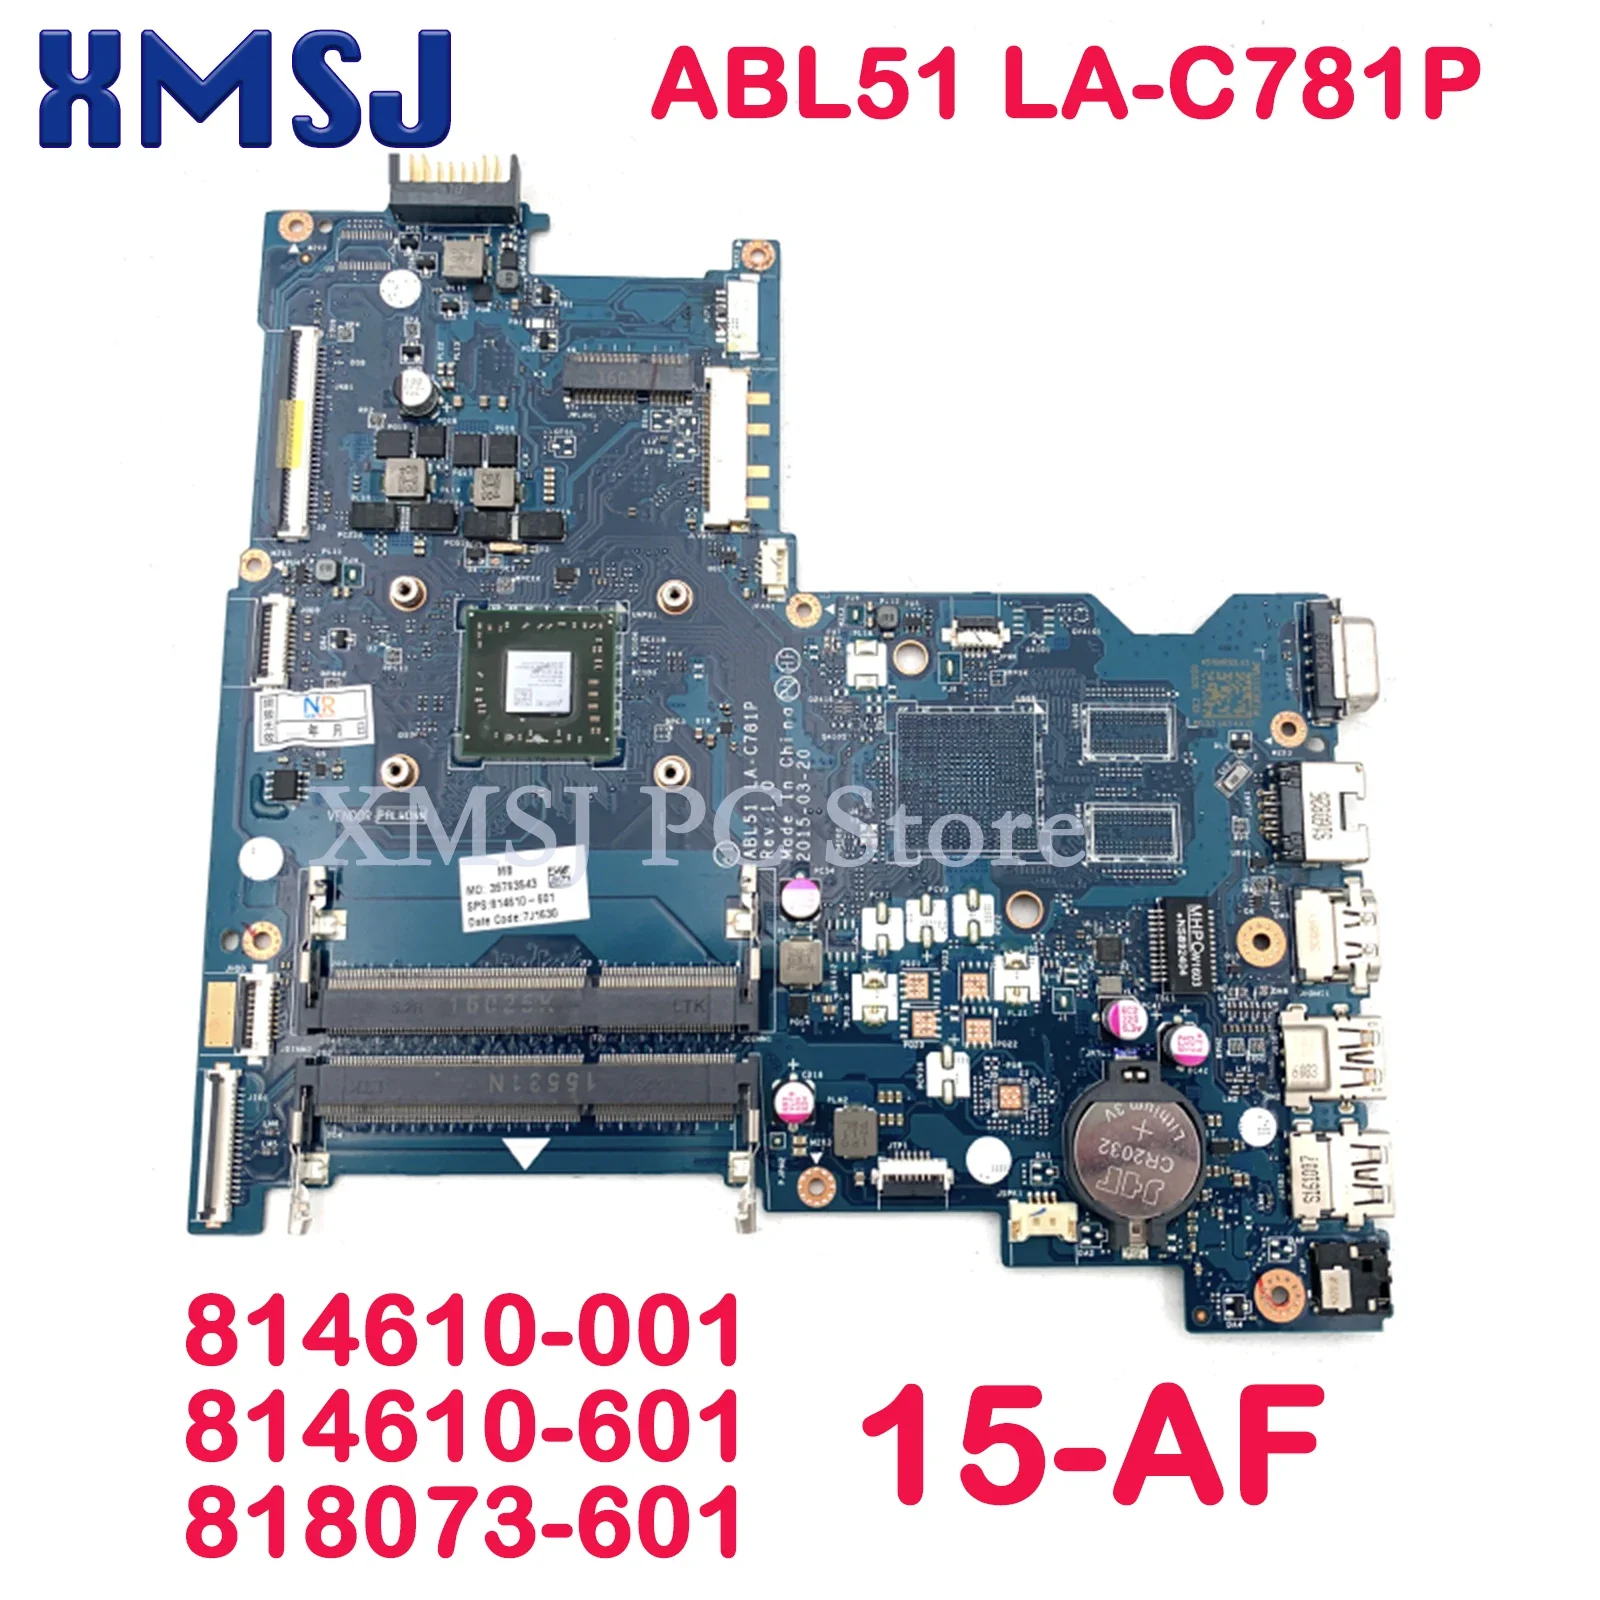 

XMSJ For HP Pavillion 15-AF Laptop Motherboard ABL51 LA-C781P 814610-001 814610-601 818073-601 Main Board Full Test